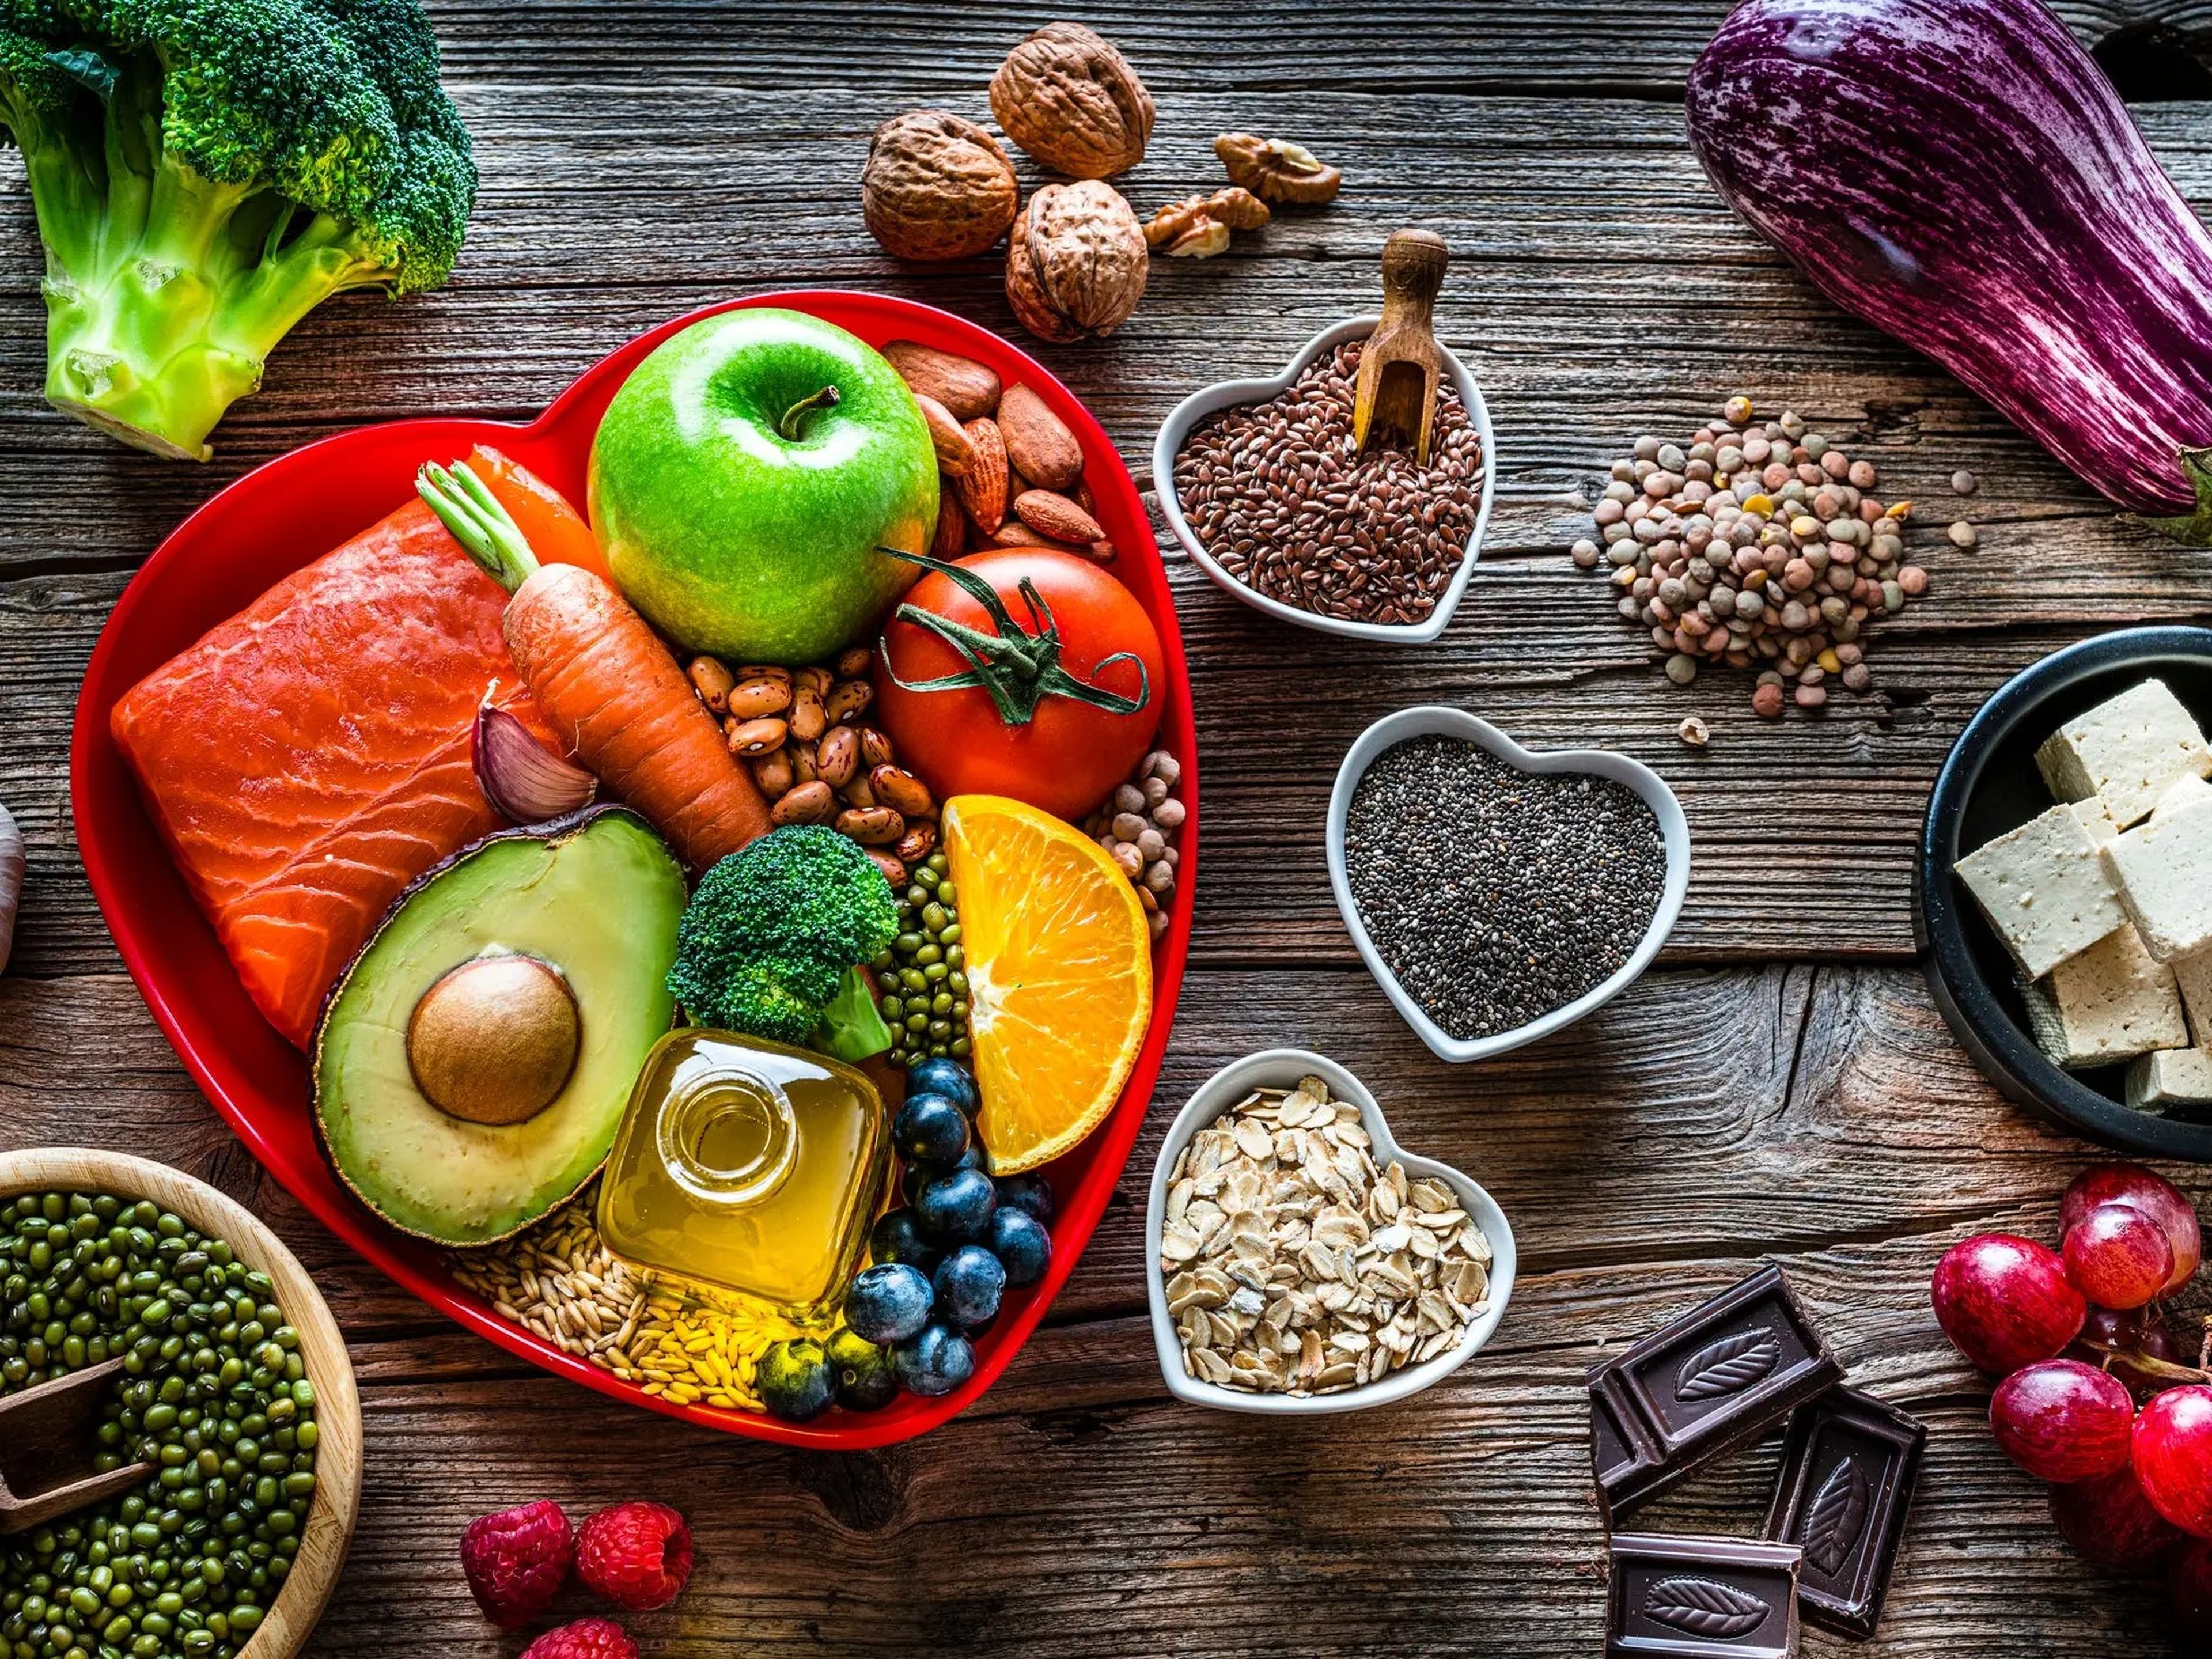 Comer muchas verduras y grasas saludables puede reducir el colesterol, el azúcar en sangre y la presión arterial.